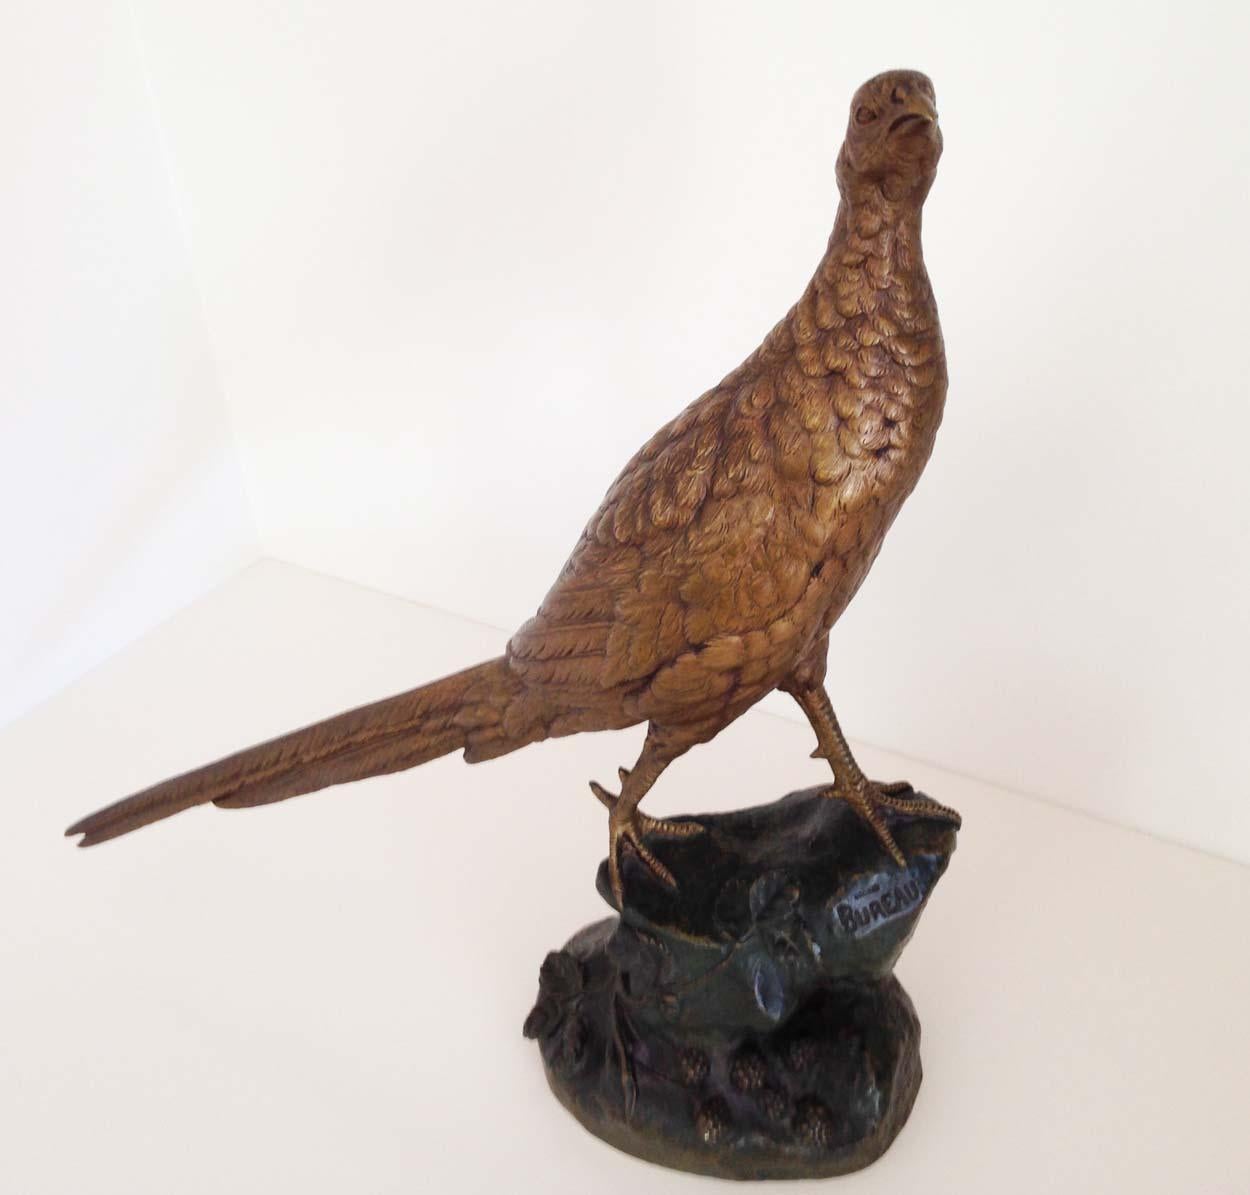 Leon Bureau (1866-1906)

Französischer Bildhauer, bekannt für sein Tiergenre.

Dieser Bronzefasan ist ein alter Guss aus der Zeit um 1900, der im Wachsausschmelzverfahren hergestellt wurde.

In Gegenwart ist sehr guter Zustand mit zwei